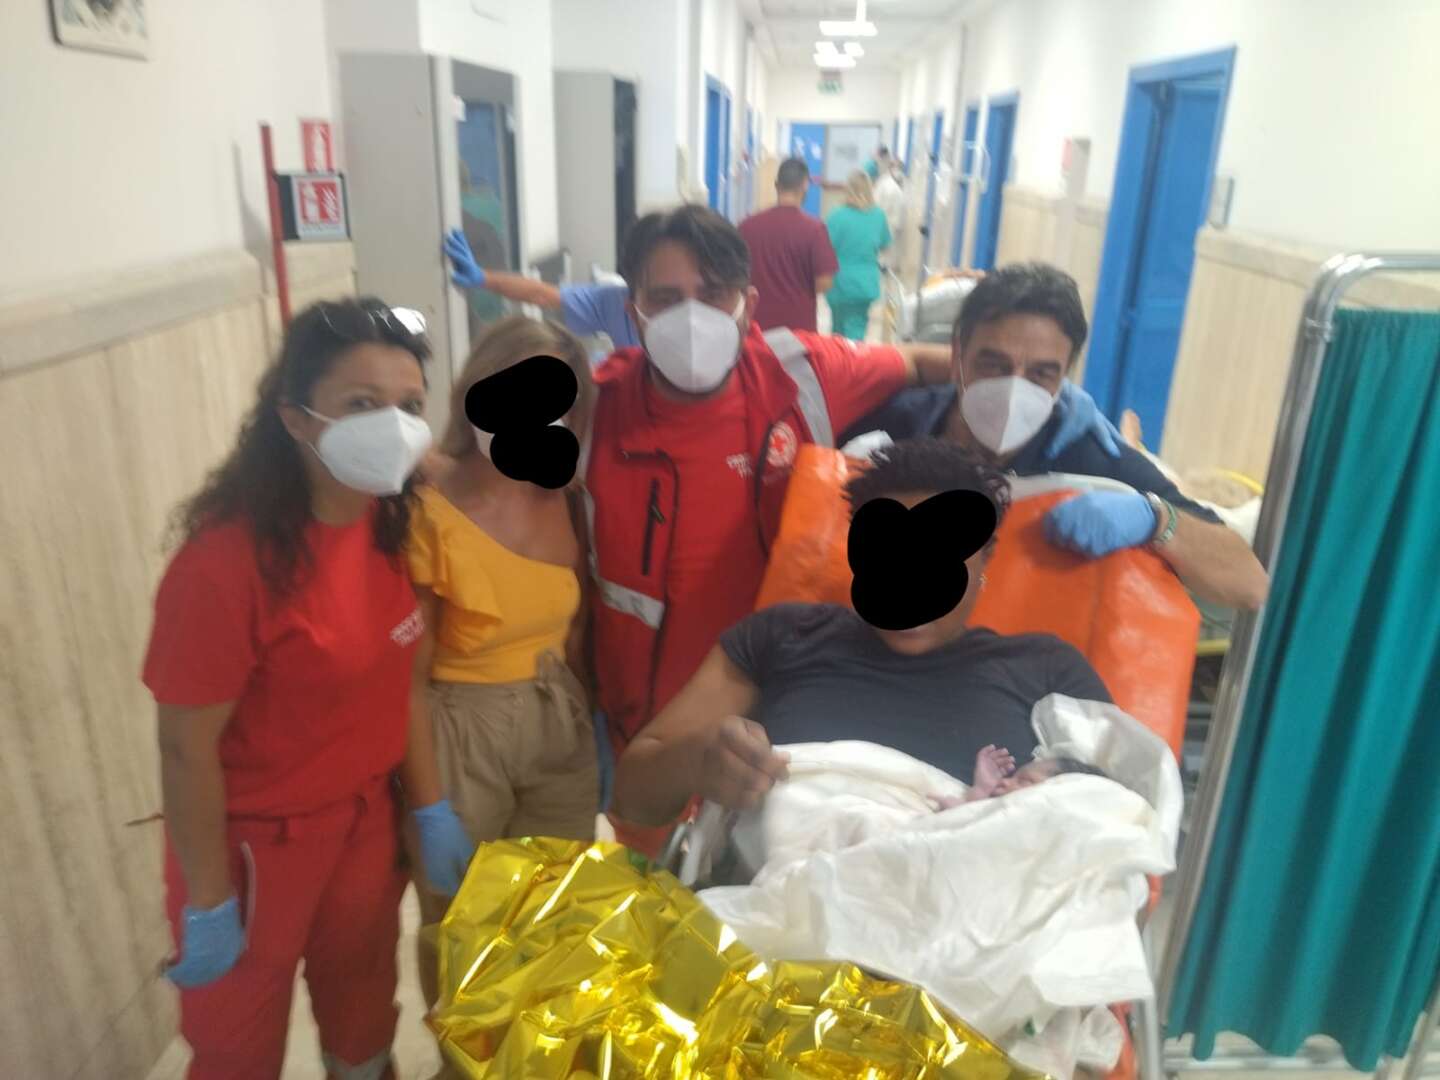 Si rompono le acque, 30enne partorisce in ambulanza durante la corsa in ospedale